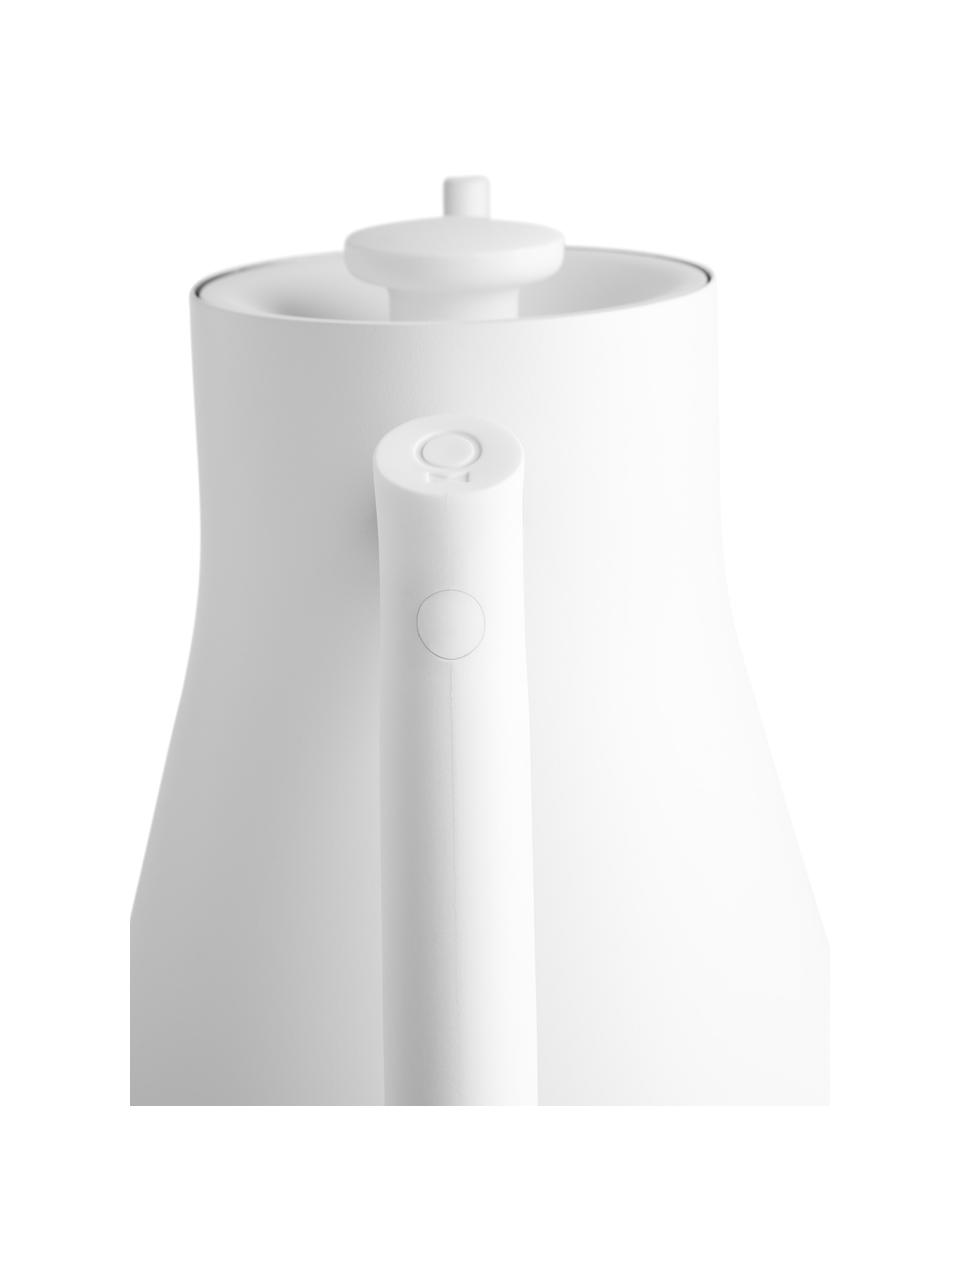 Elektrischer Wasserkocher Stagg, 0.9 L, Gehäuse: Edelstahl, beschichtet, Weiß, B 17 x H 20 cm